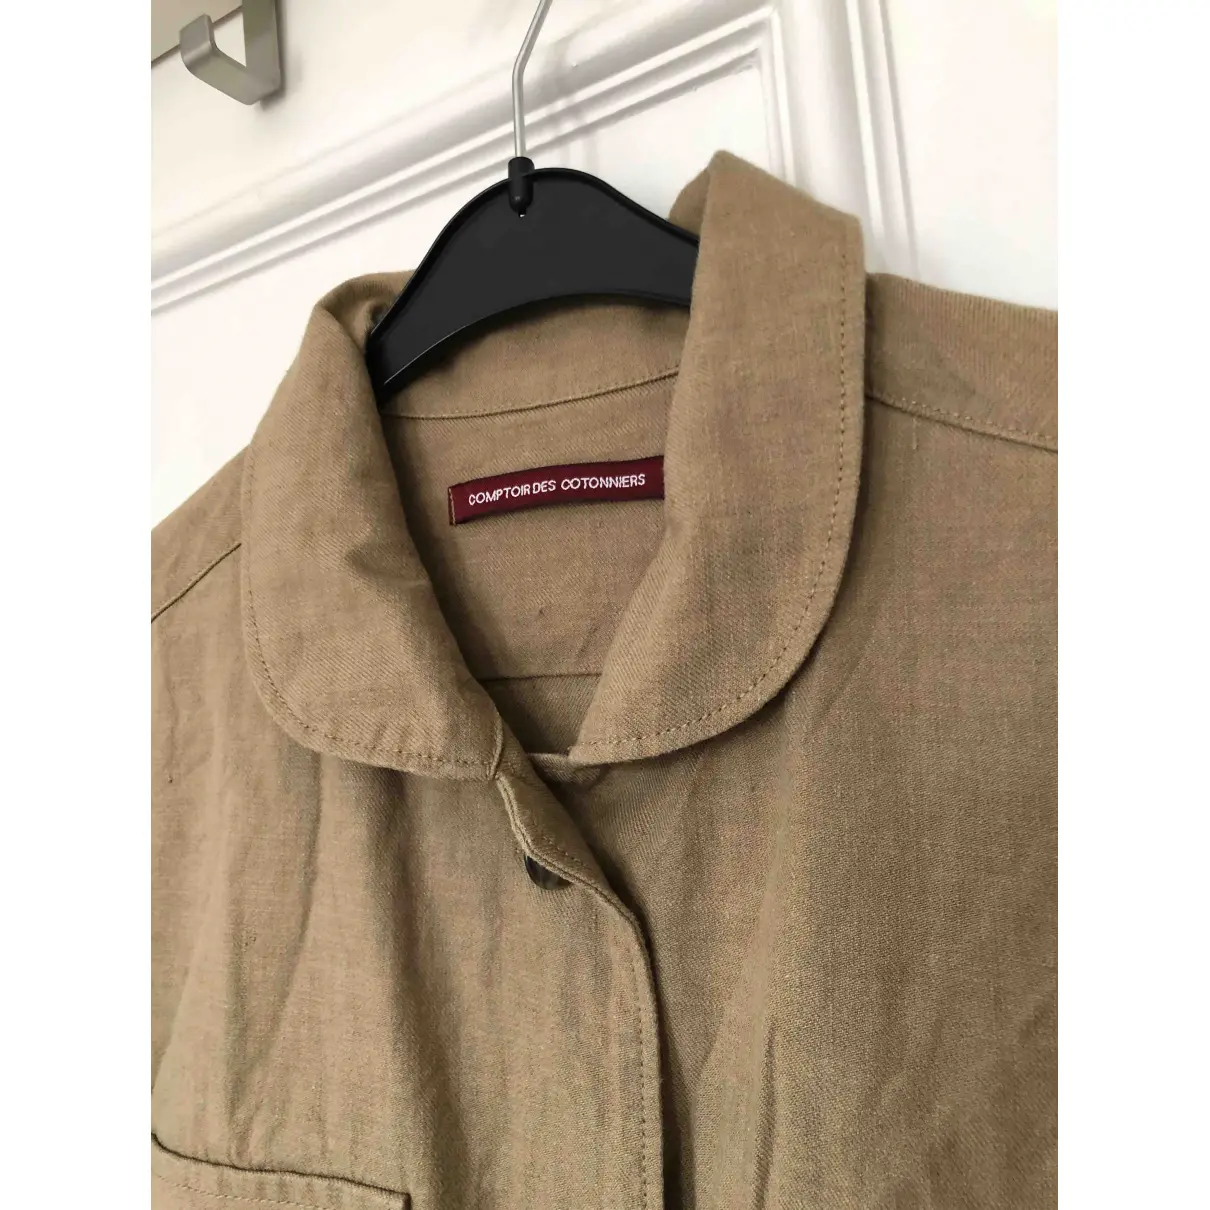 Buy Comptoir Des Cotonniers Jacket online